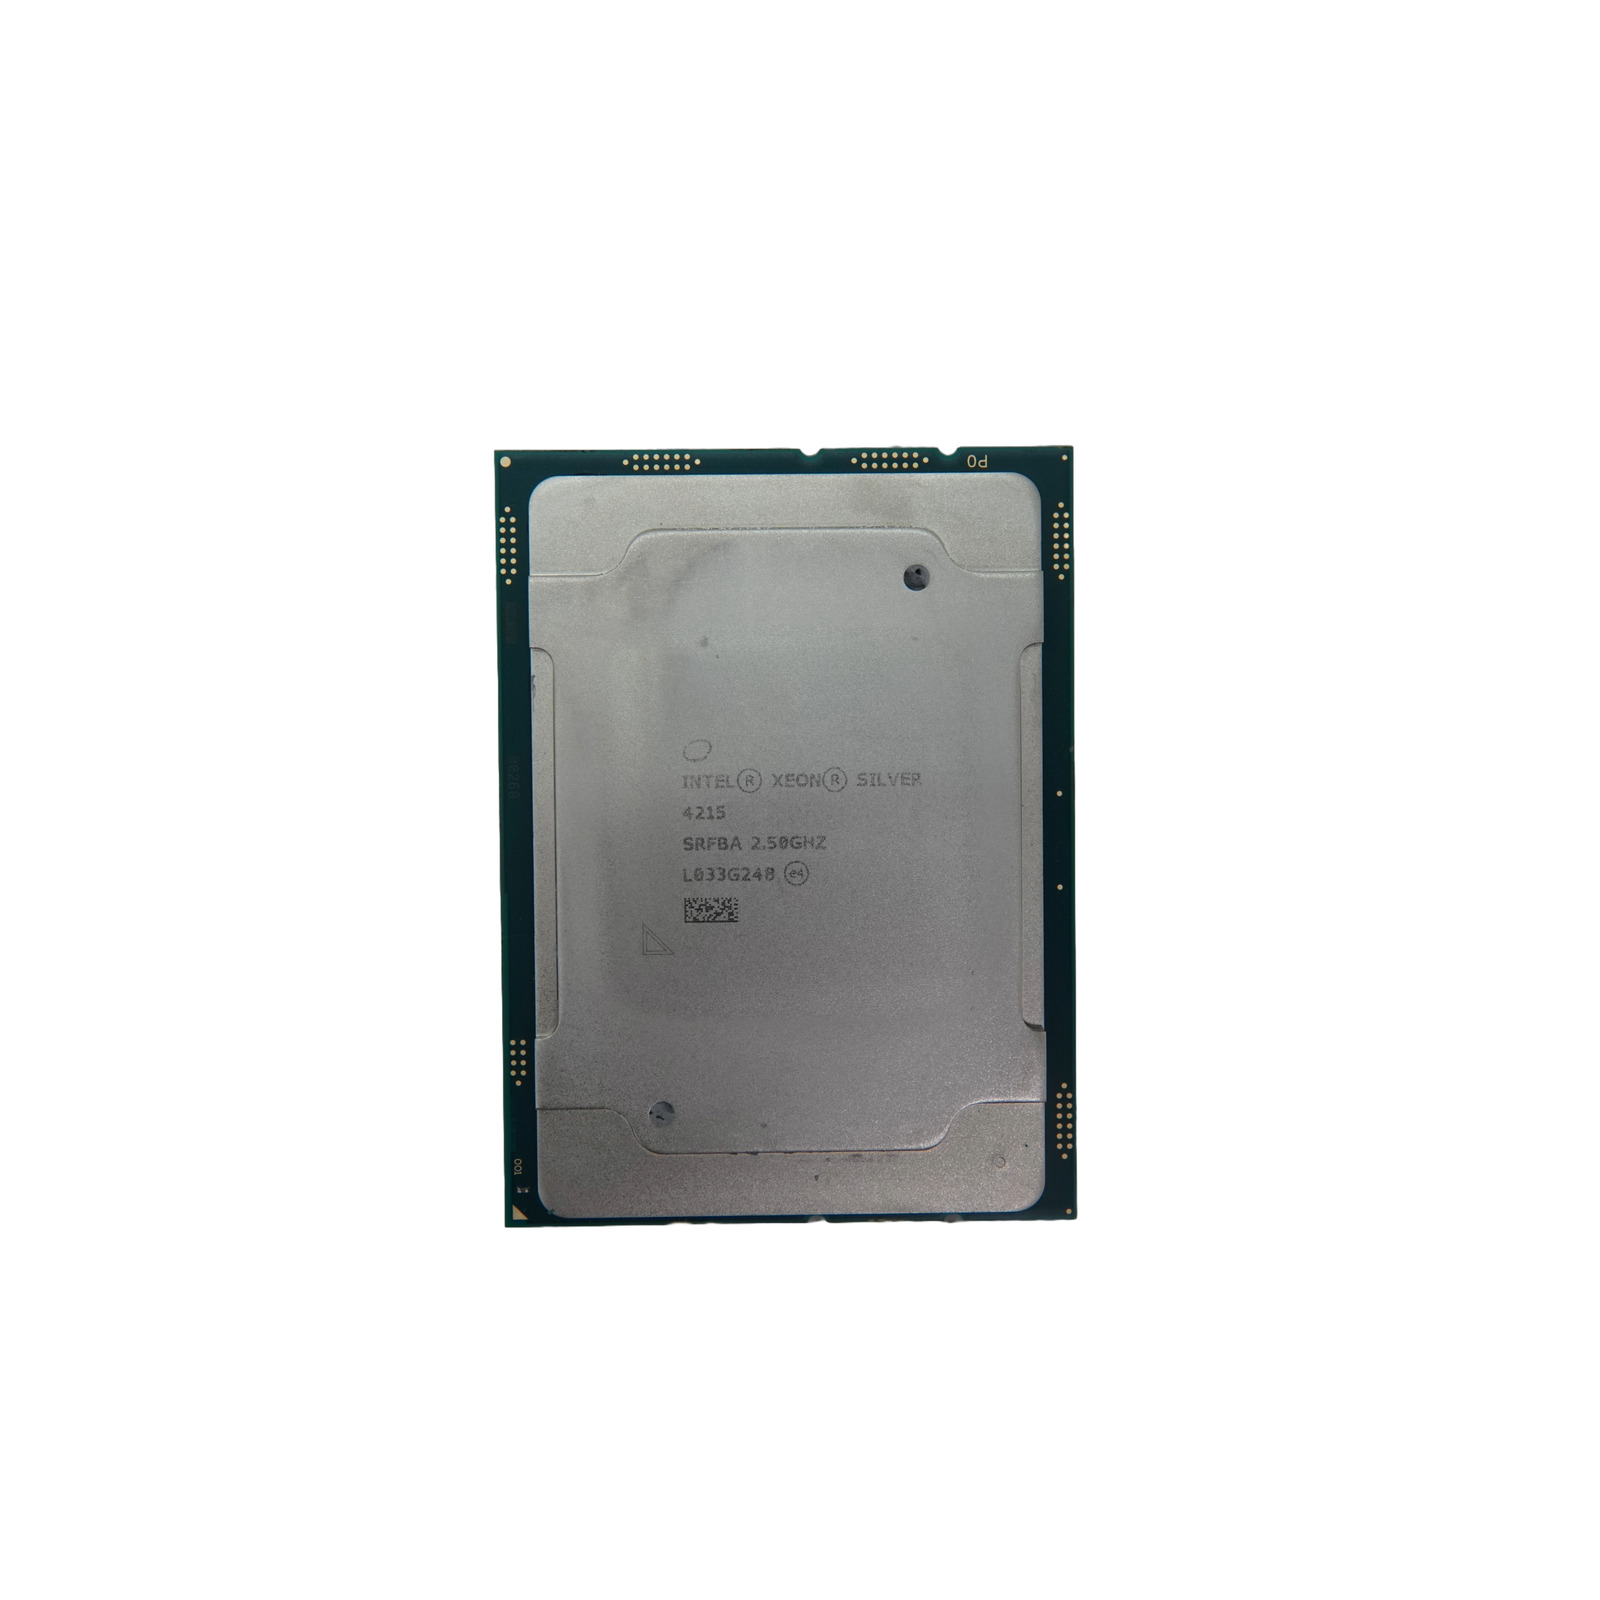 Intel Xeon Silver 4215 SRF8A 2.50GHz 8c/16t 130W Processor